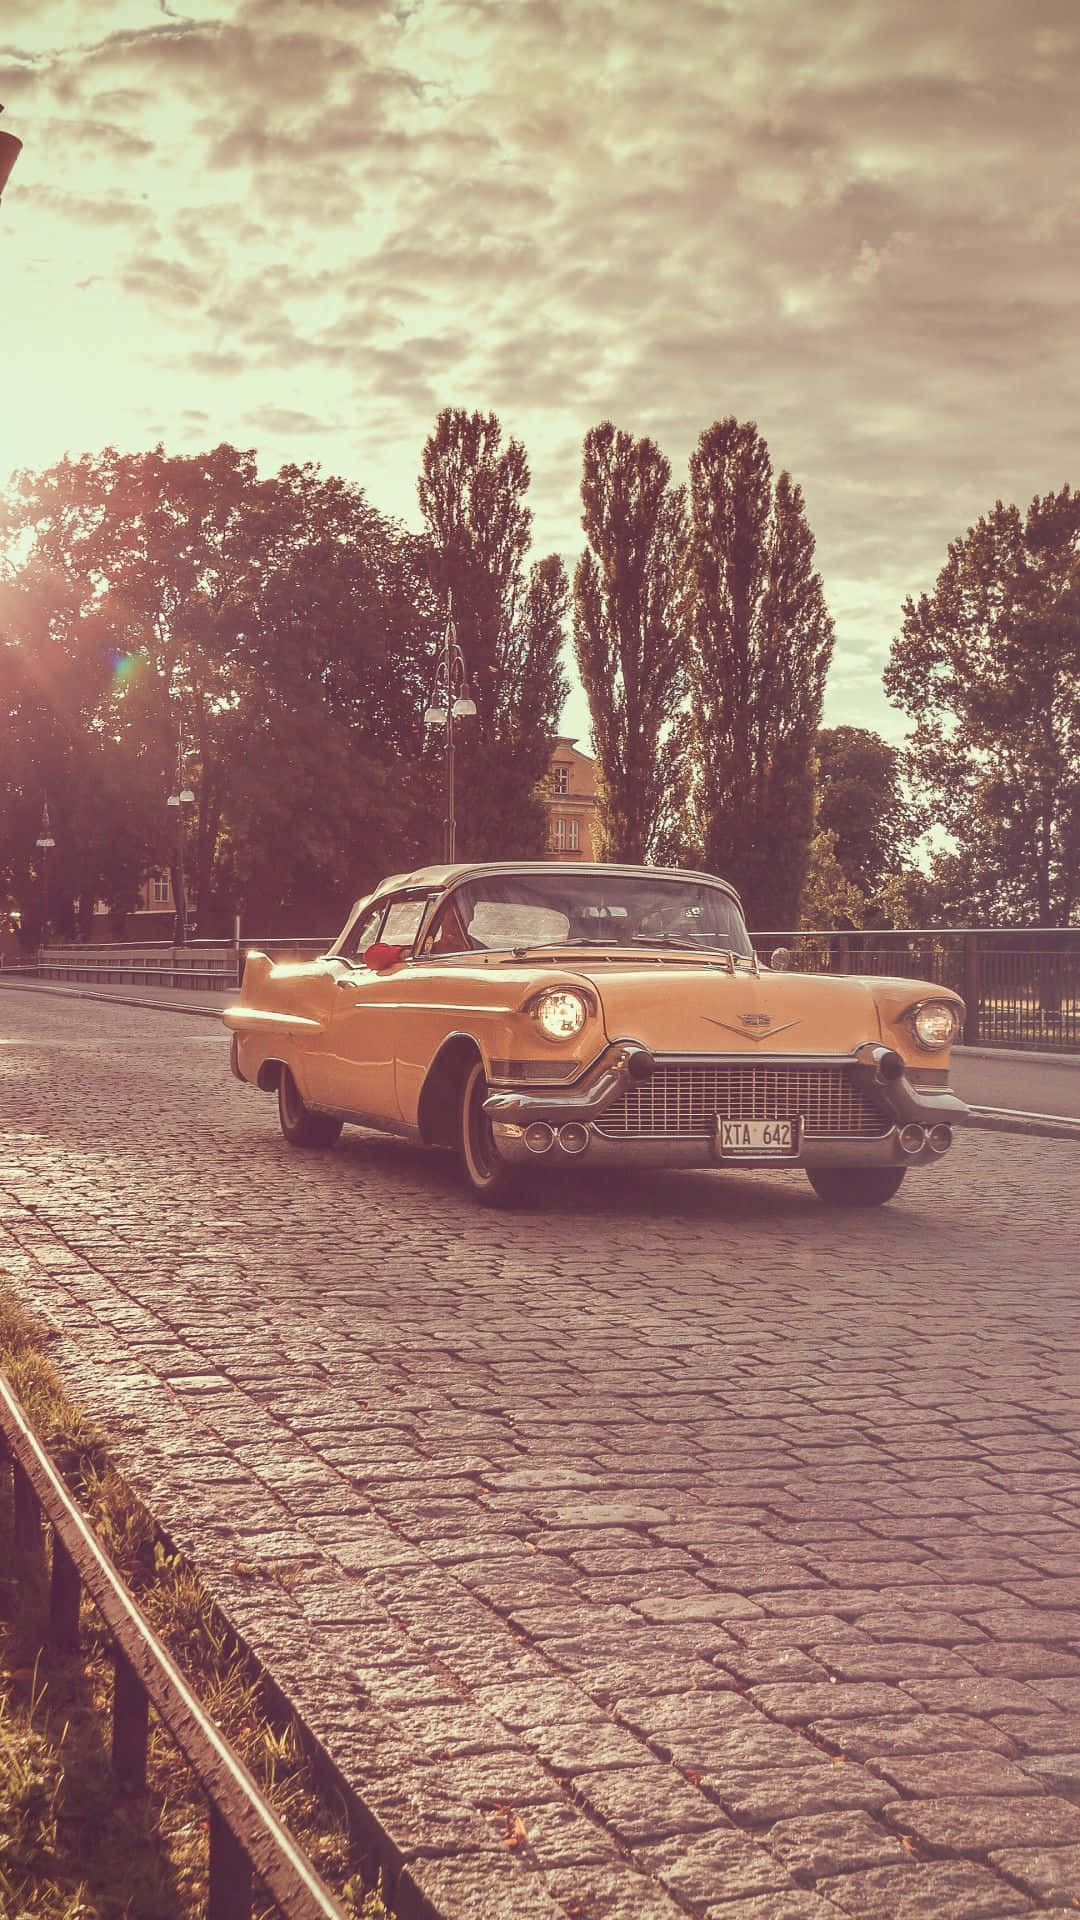 Orangenechevrolet-vintage-autobilder